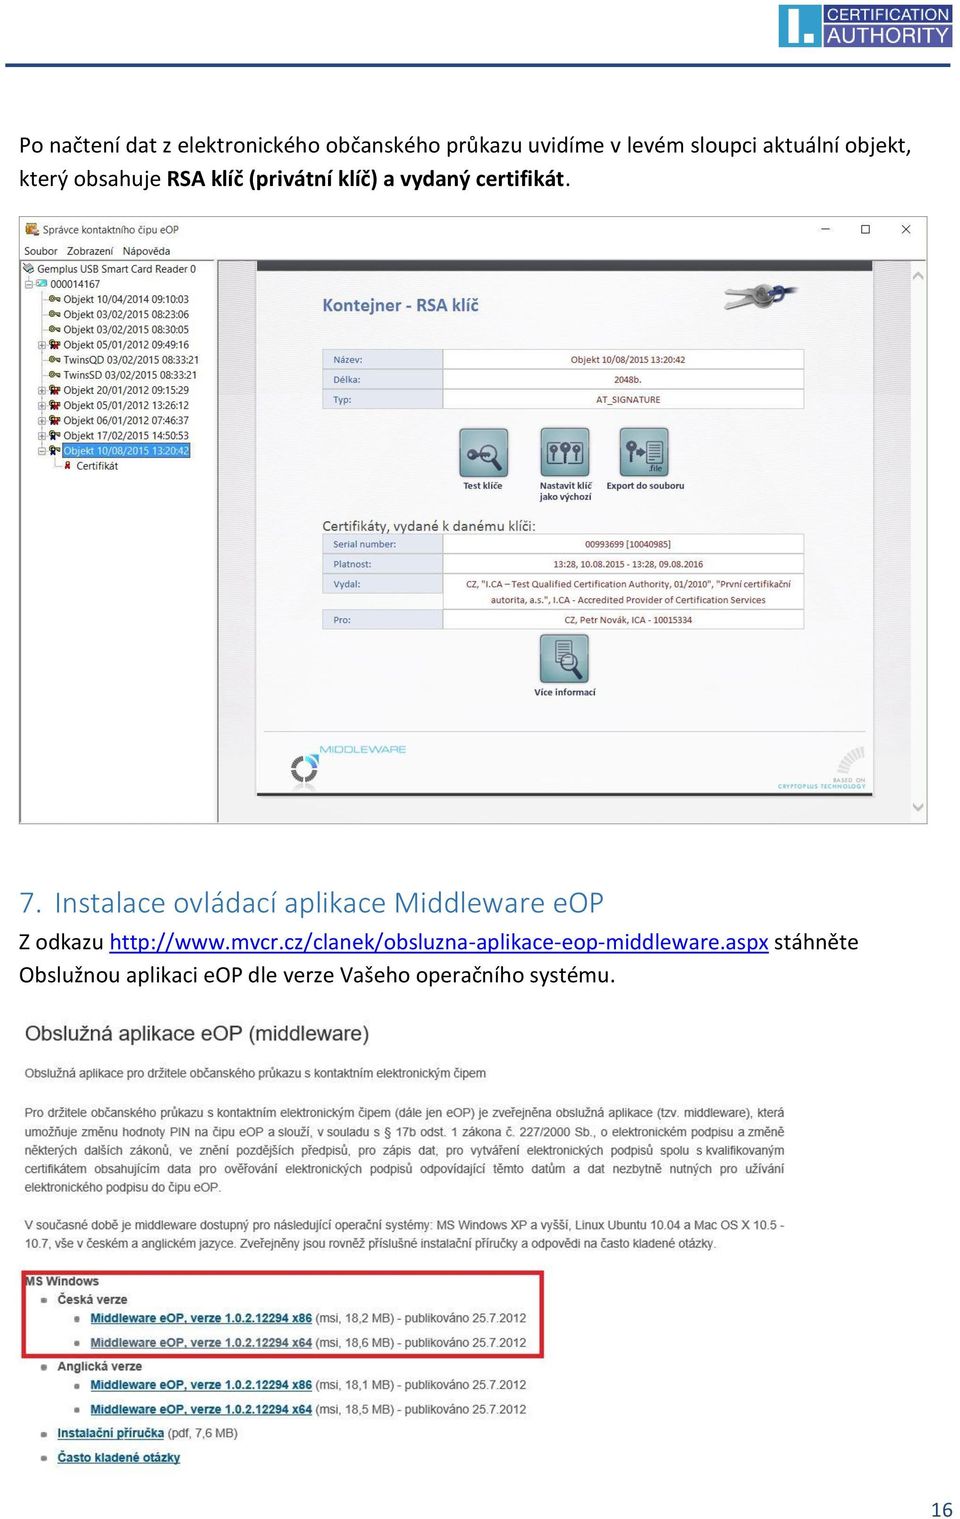 Instalace ovládací aplikace Middleware eop Z odkazu http://www.mvcr.